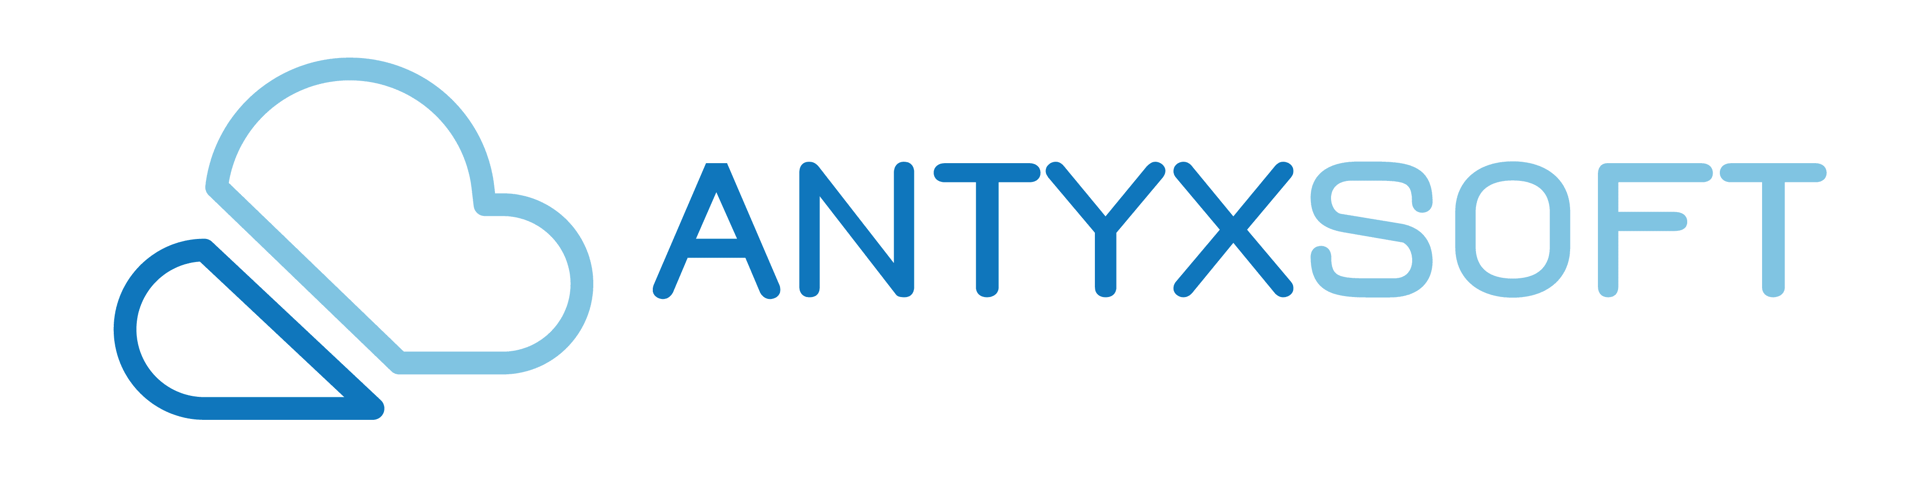 Antyxsoft Marketplace Global